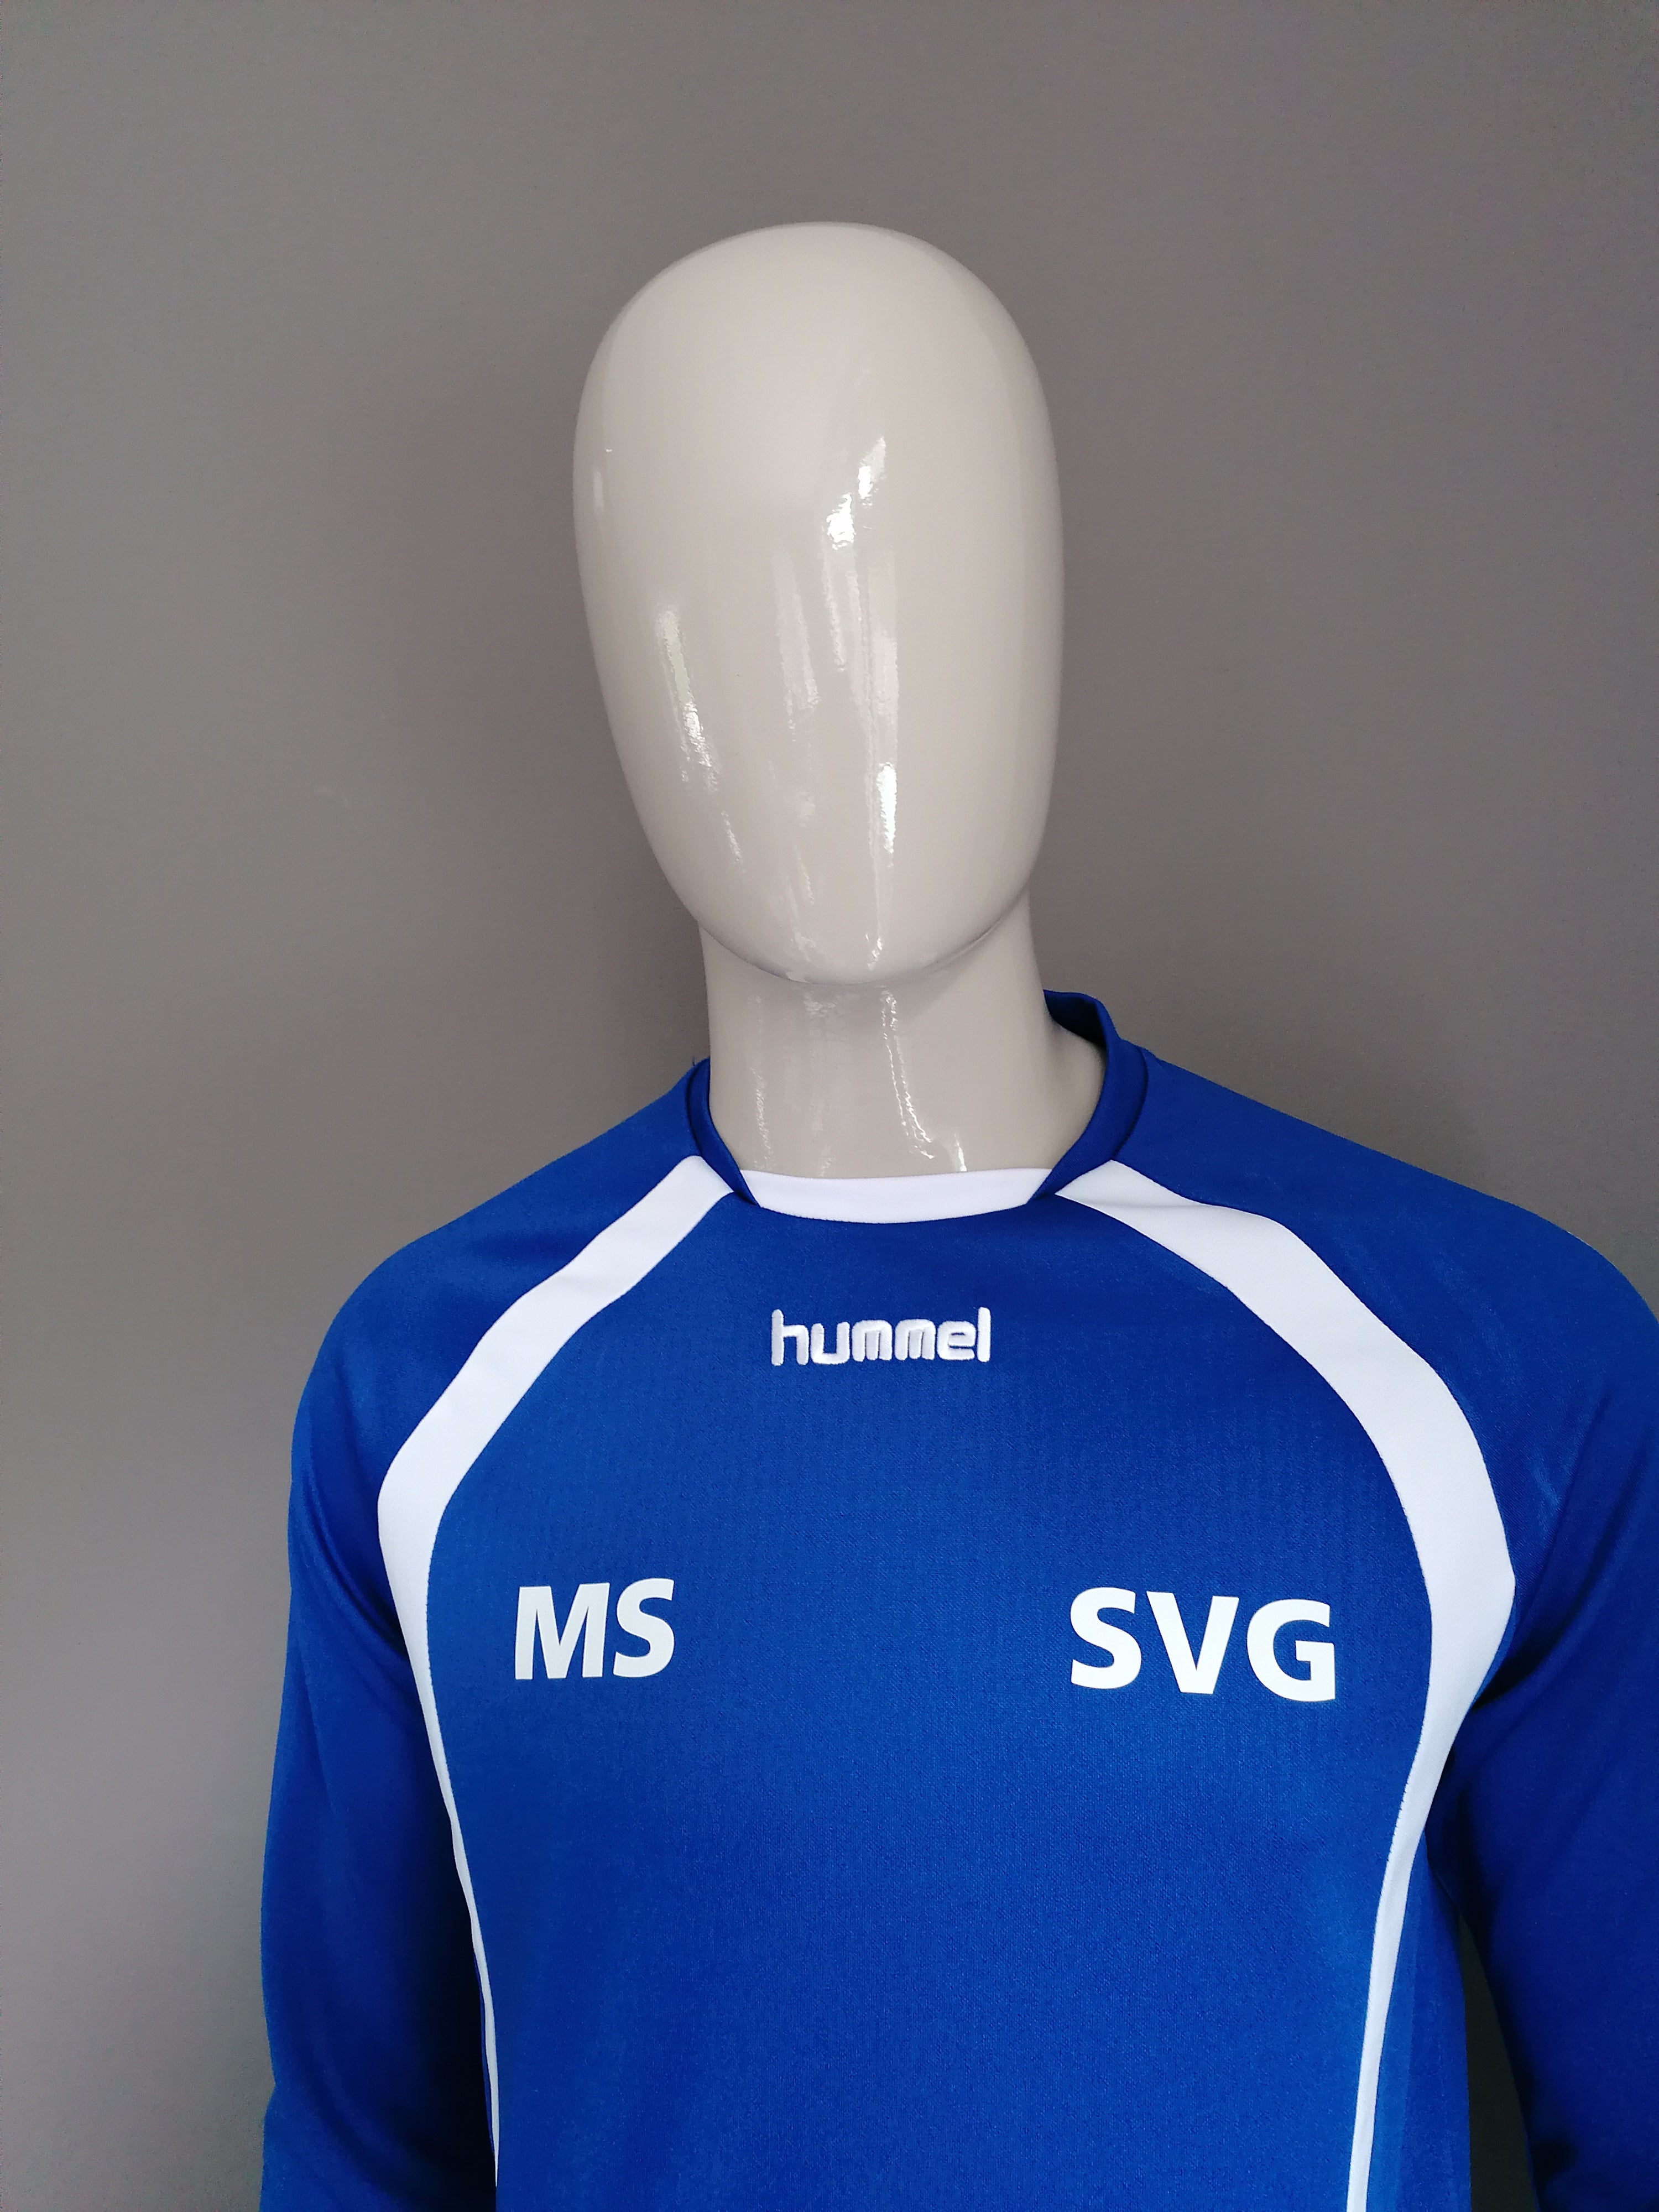 uitglijden Kader Meer dan wat dan ook Hummel "SVG" sport trui. Blauw Wit gekleurd. Maat M. | EcoGents